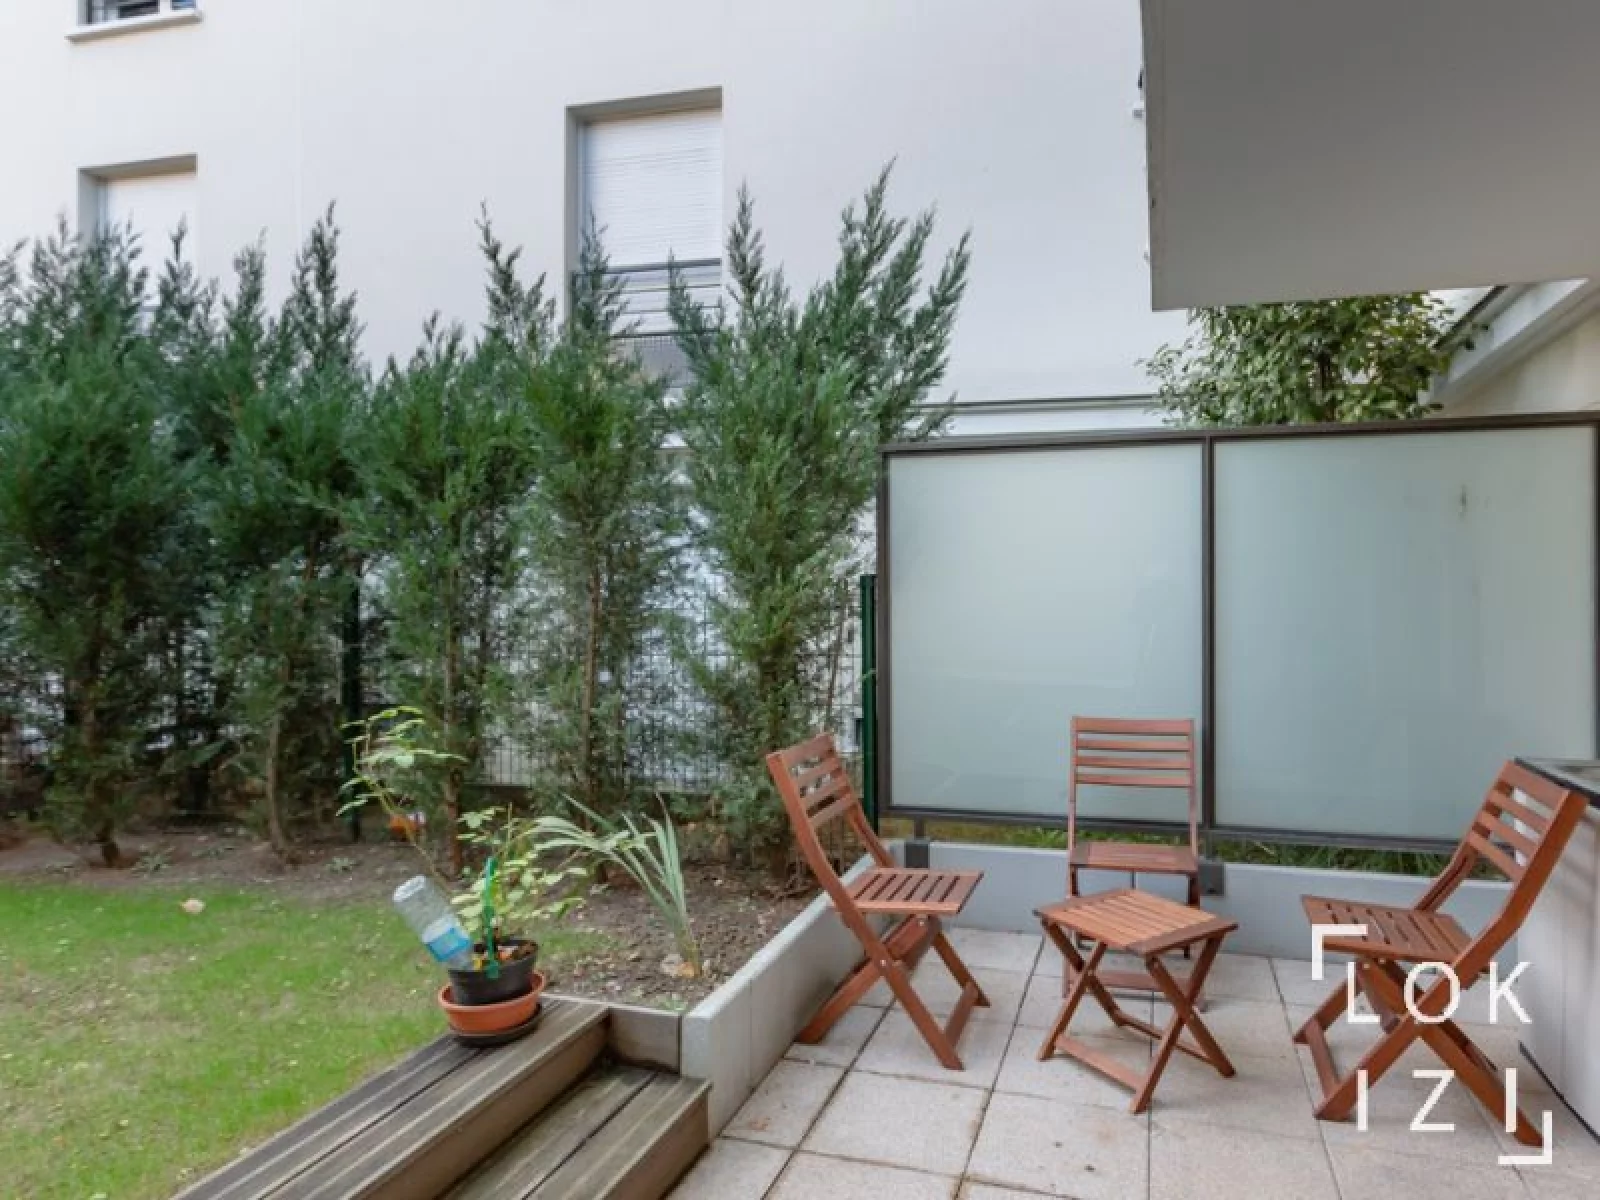  Vente appartement meubl 3 pices 64m avec terrasse (Paris - Rosny s/ Bois 93)